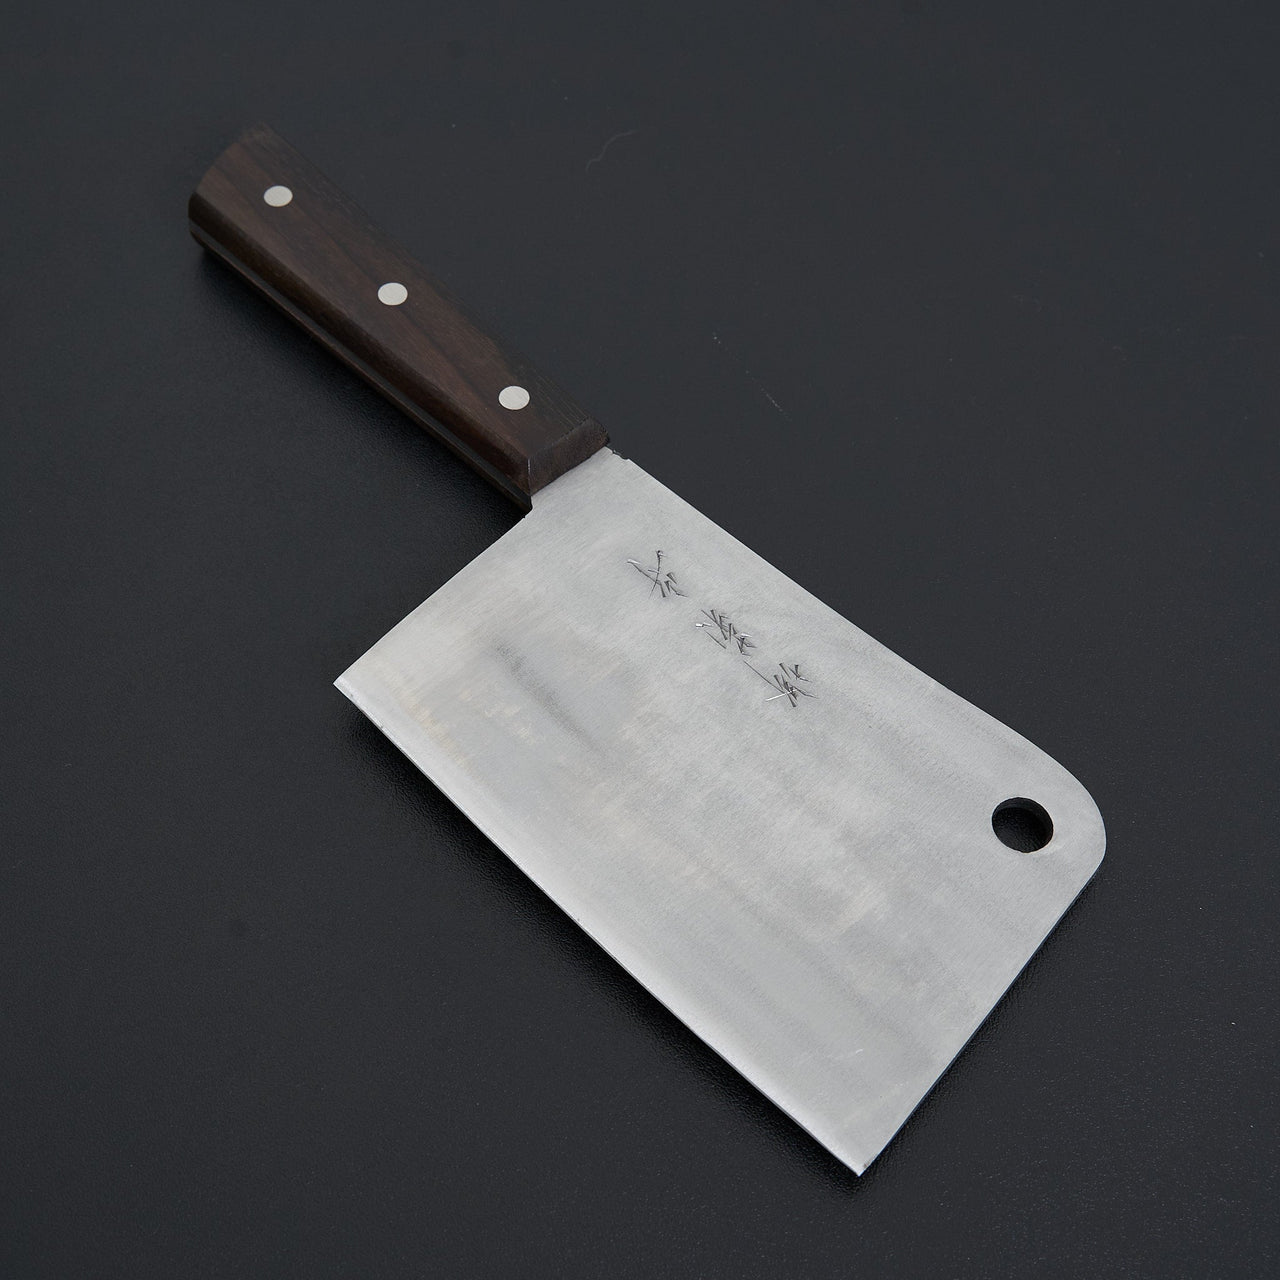 Sakai Kikumori Nihonko Carbon Cleaver 150mm-Knife-Sakai Kikumori-Carbon Knife Co